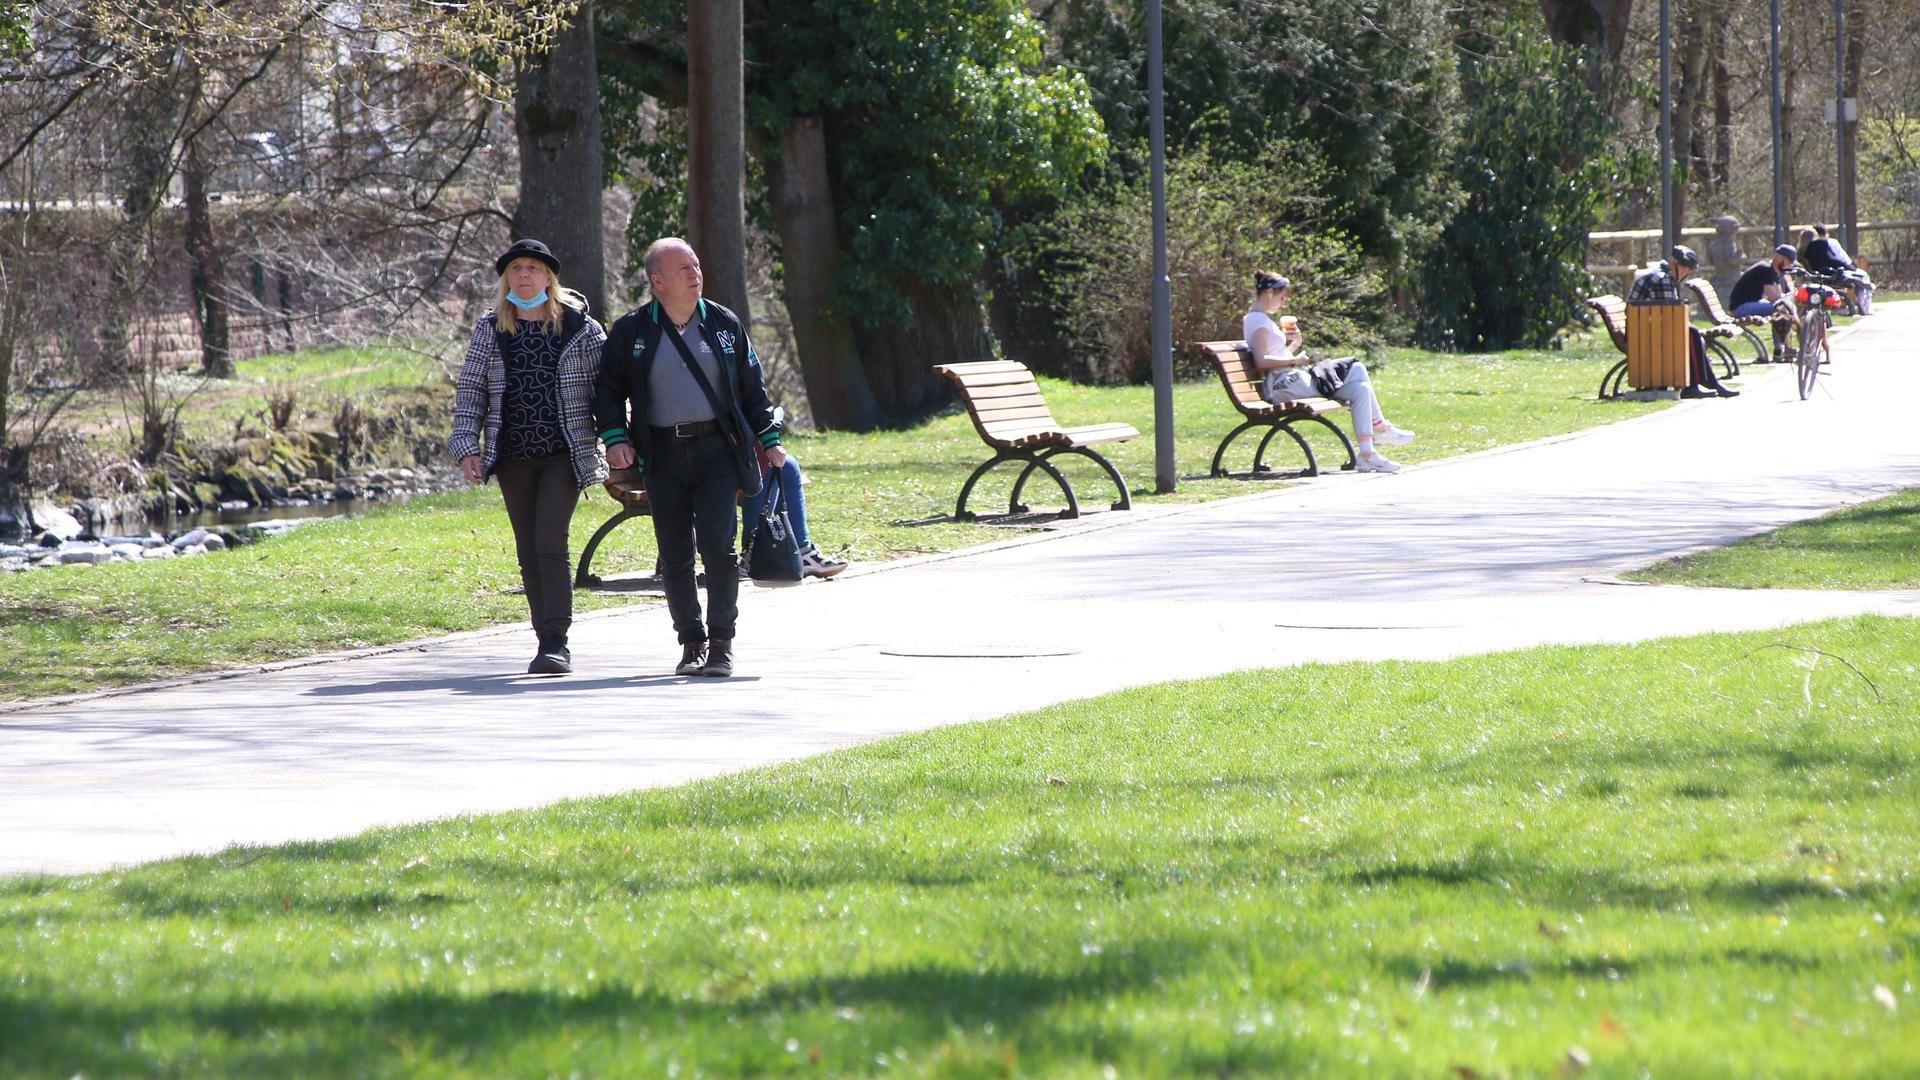 Kaum Gedränge: In den Parks der Stadt geht es überraschend gesittet zu trotz des beginnenden Frühjahrs. Dafür werden Radverkäufer mit Anfragen nahezu überflutet.